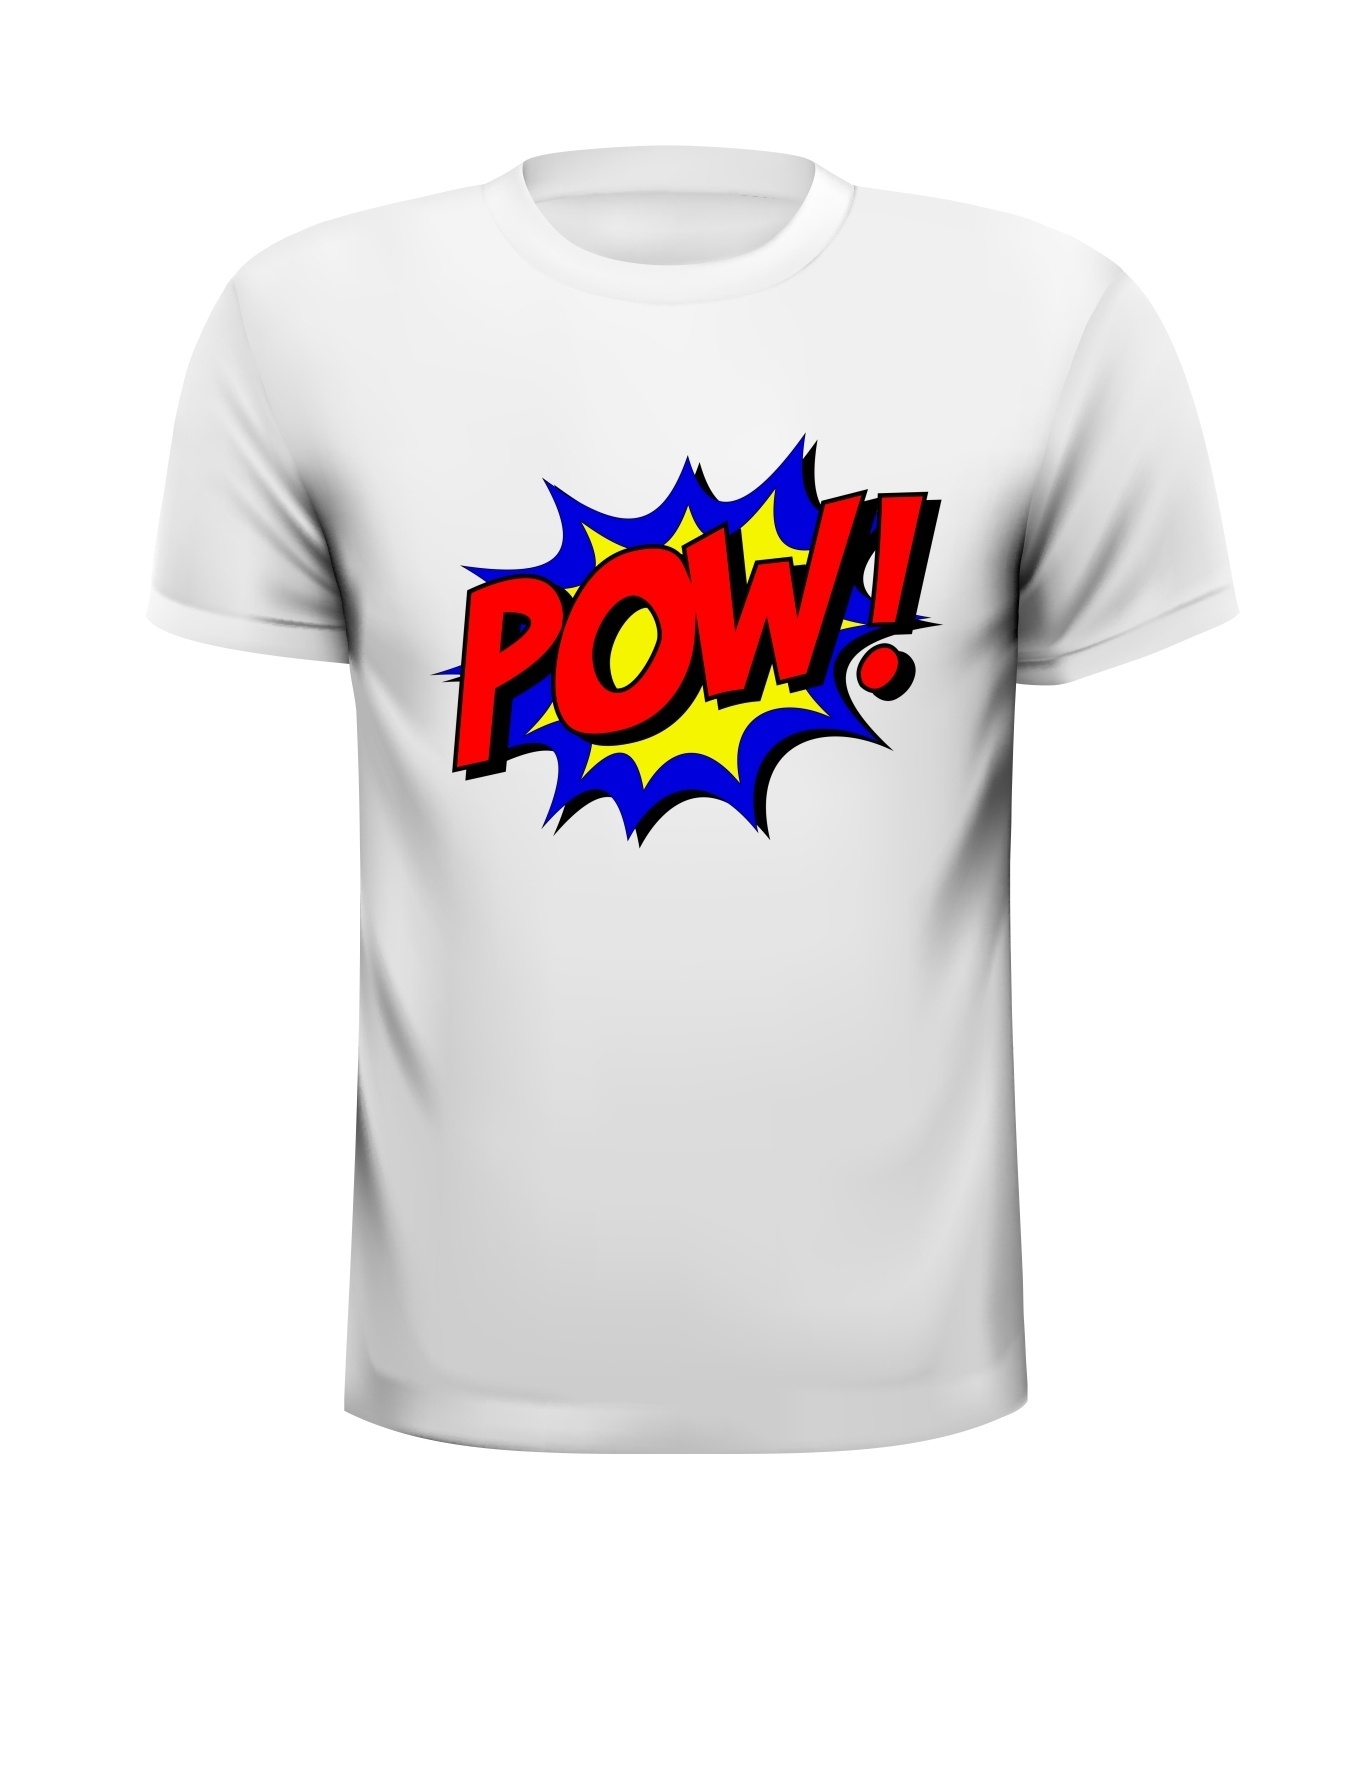 Pow pauw bang T-shirt